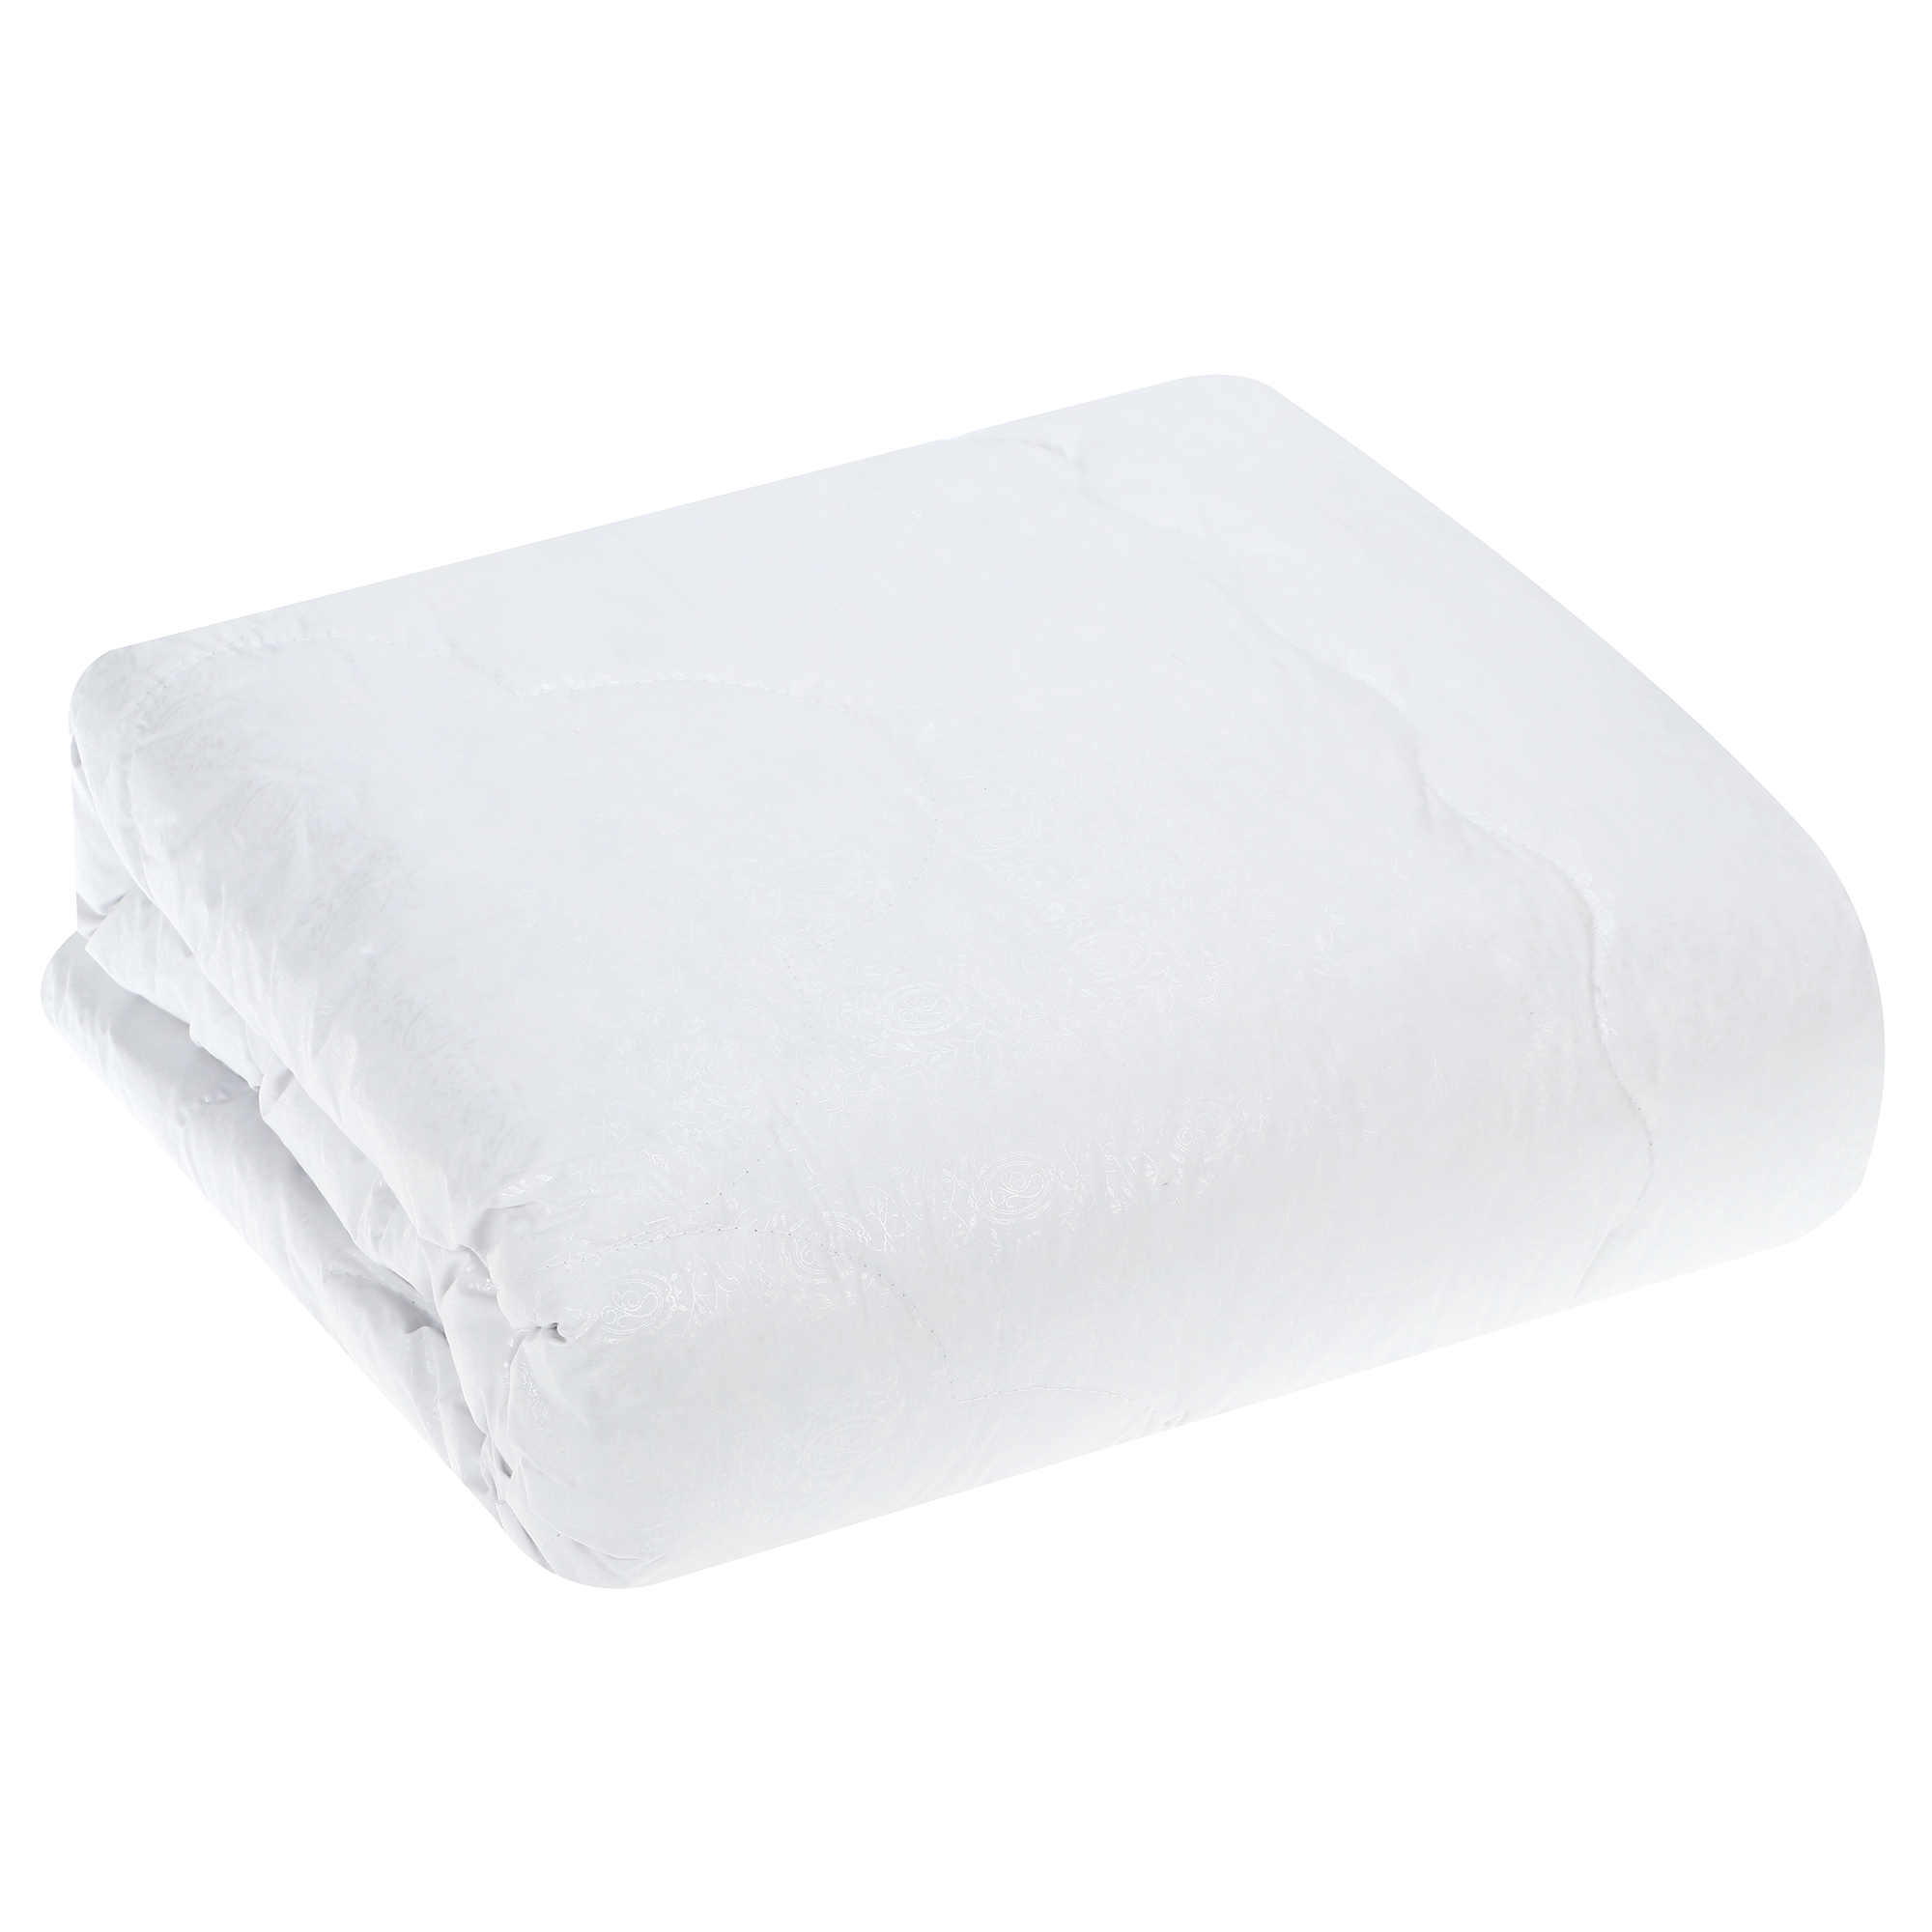 Одеяло Medsleep Landau белое 175х200 см, цвет белый - фото 5